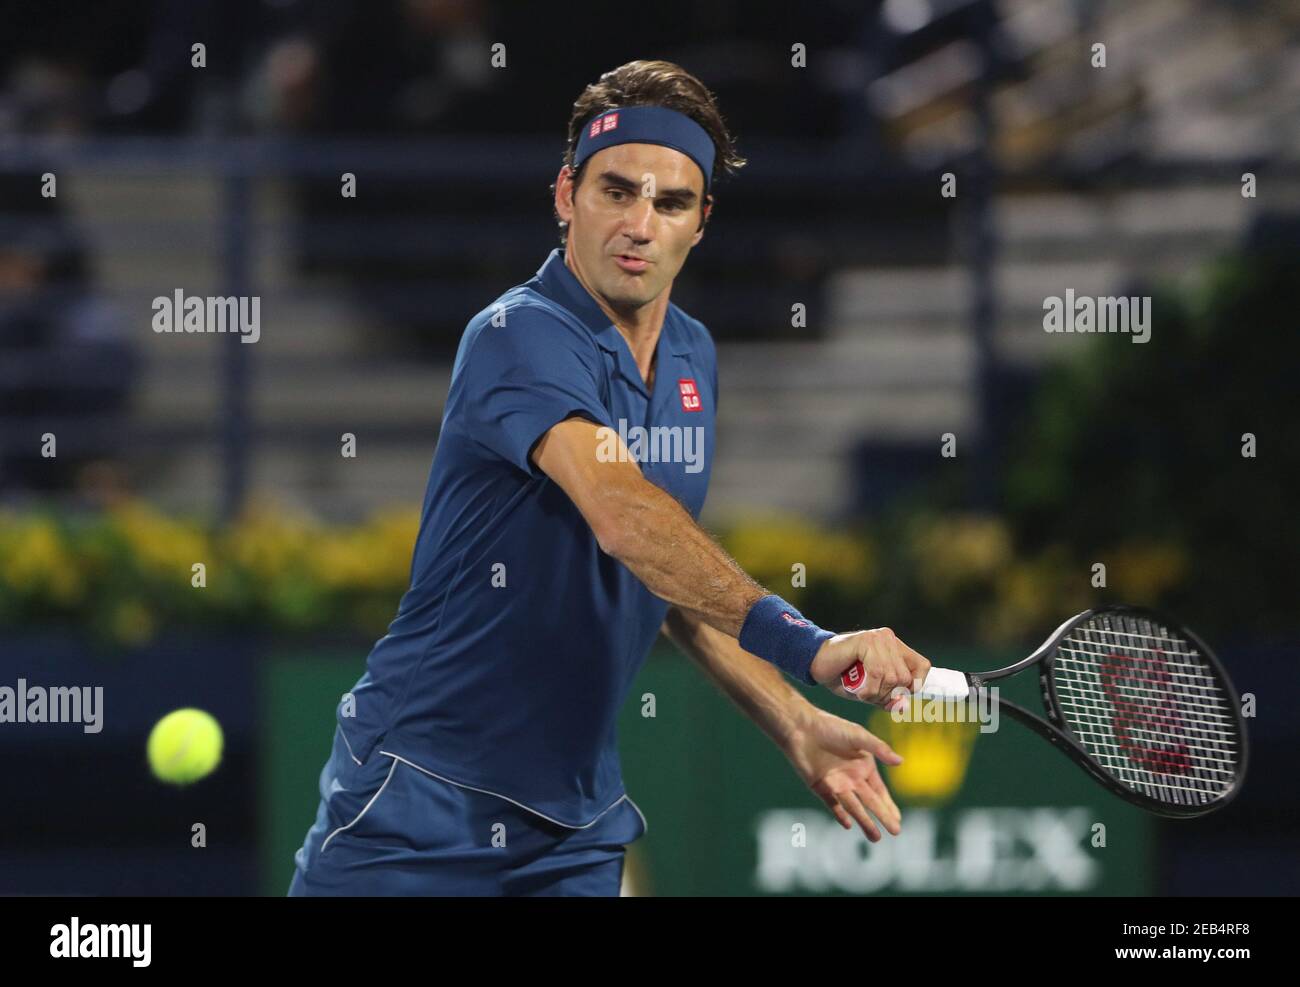 Tenis - ATP 500 - Dubai Campeonato de Tenis - Dubai Duty Free Tennis  Stadium, Dubai, Emiratos Árabes Unidos - 1 de marzo de 2019 Roger Federer  de Suiza en acción durante